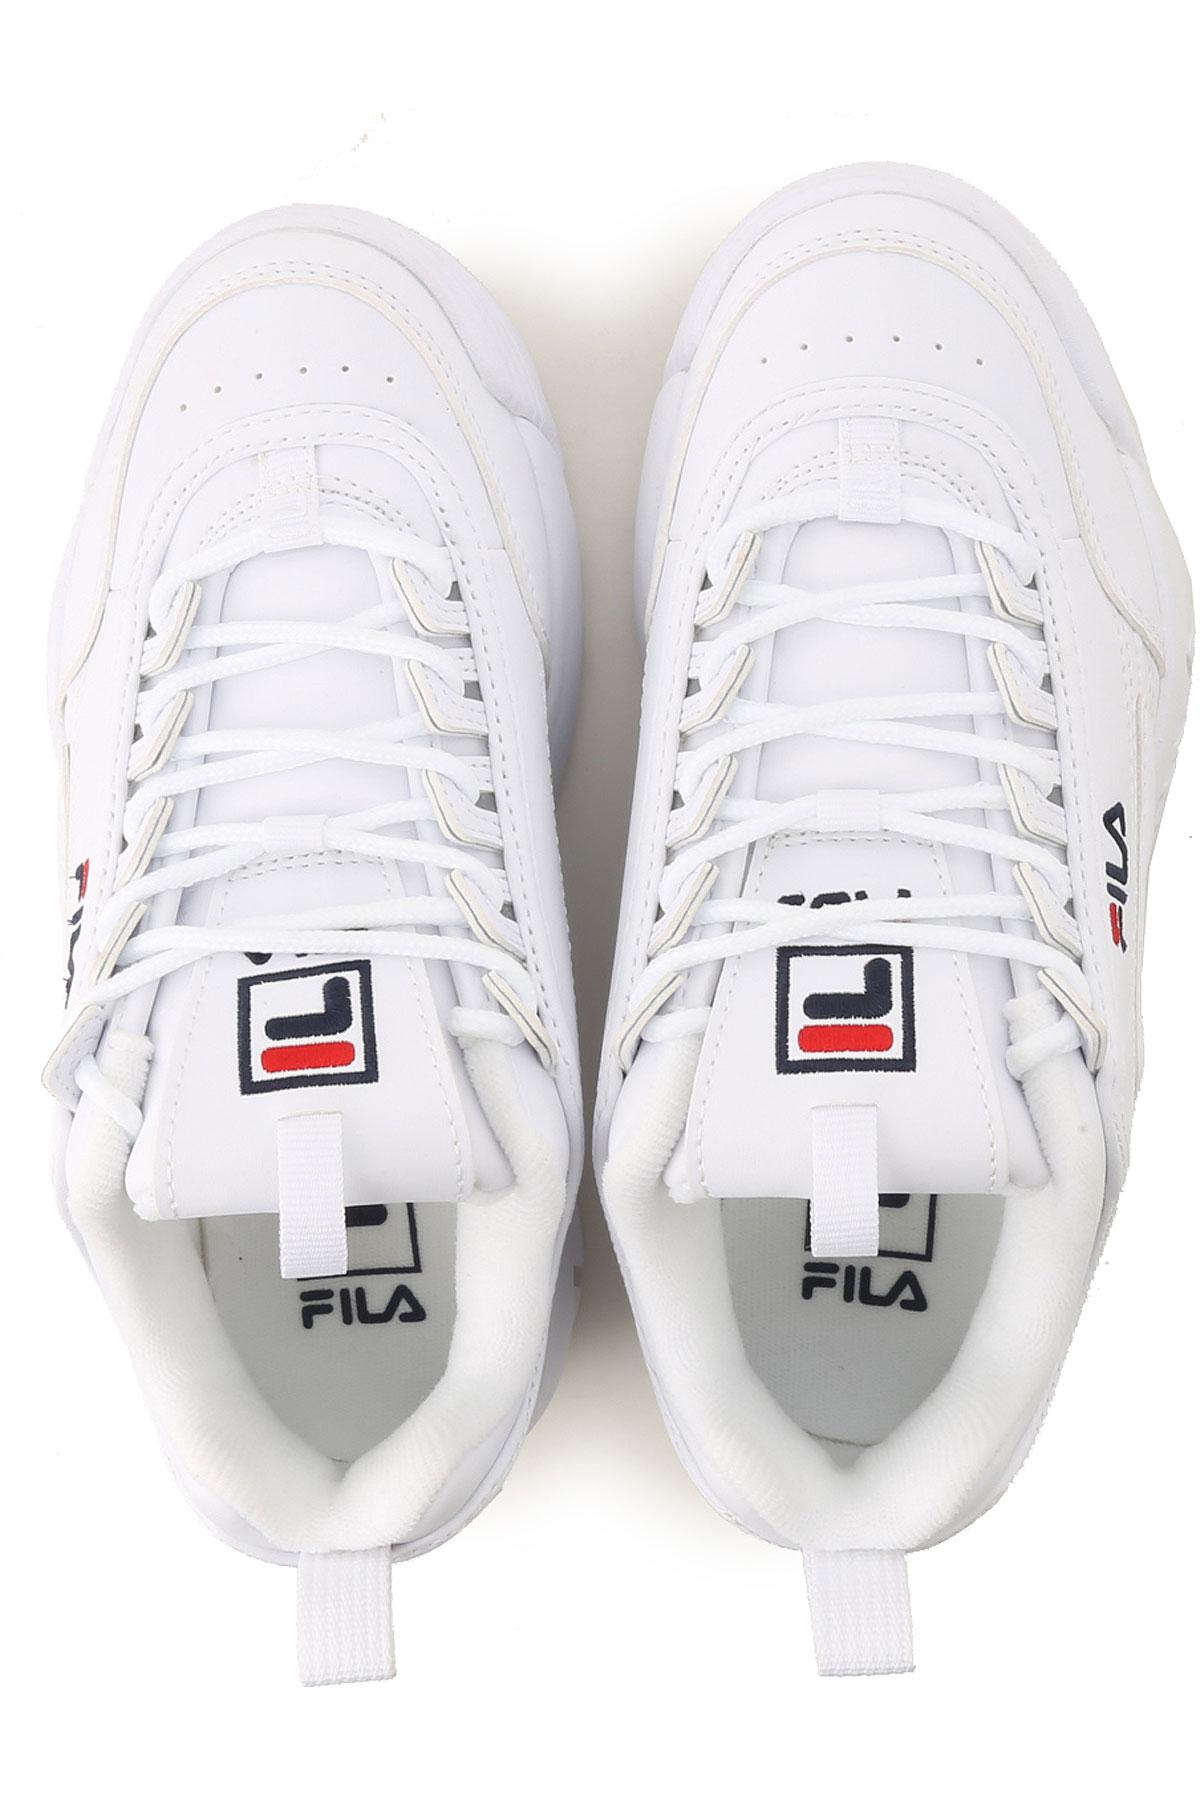 Fila Sneakers For Women On Sale in White - Lyst